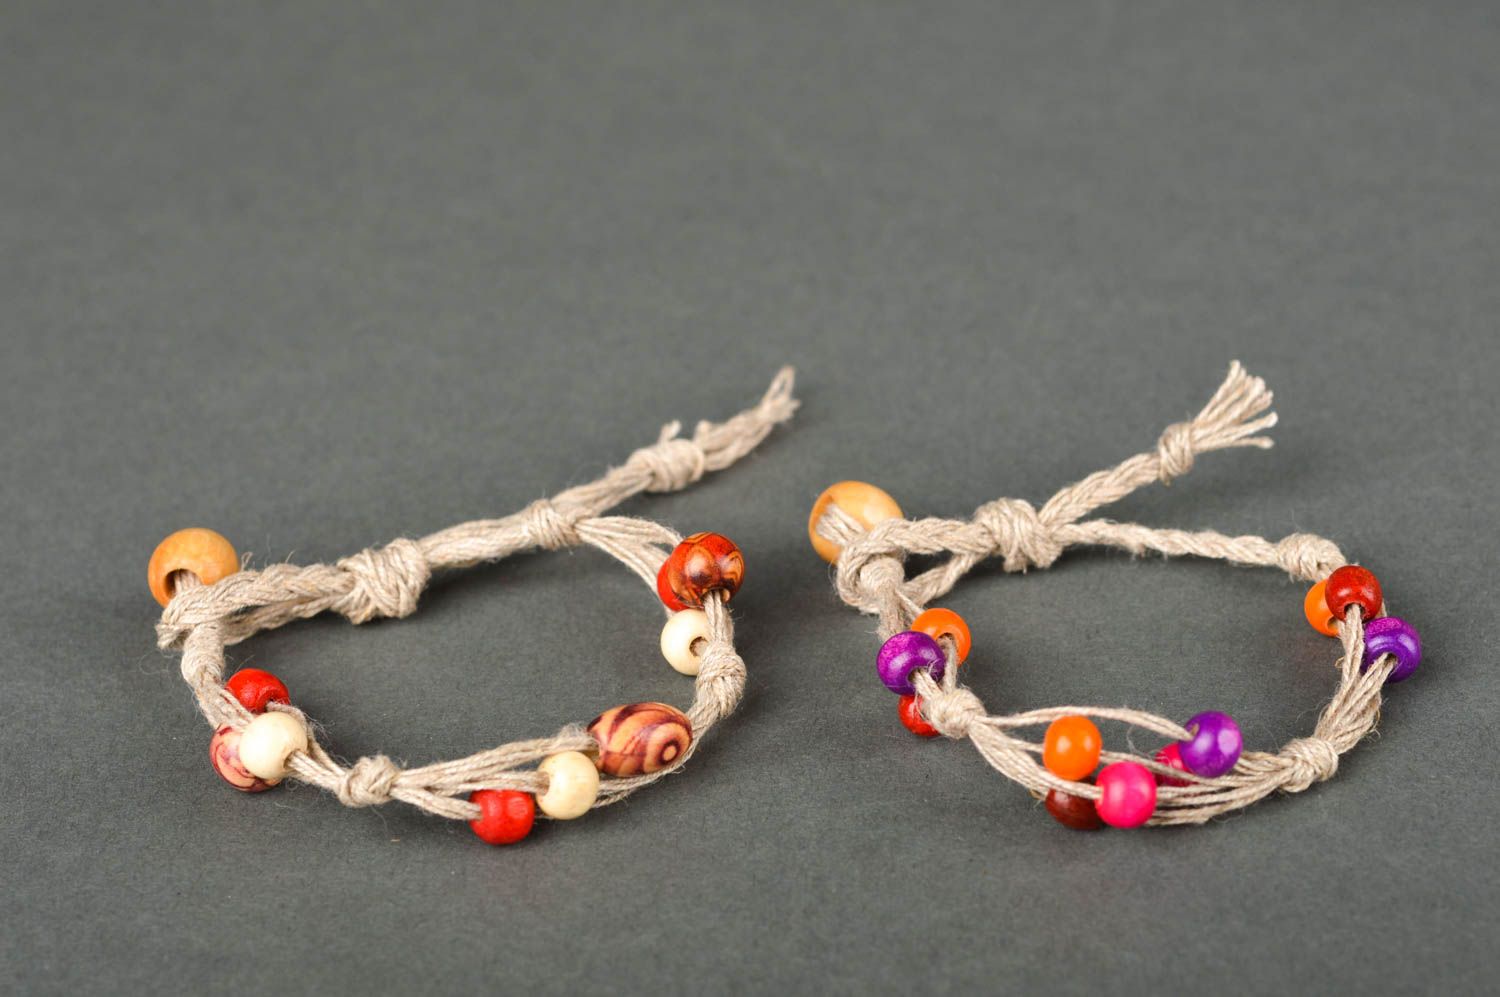 Handmade cord bracelet 2 cool bracelets beaded bracelet designs gifts for her photo 2